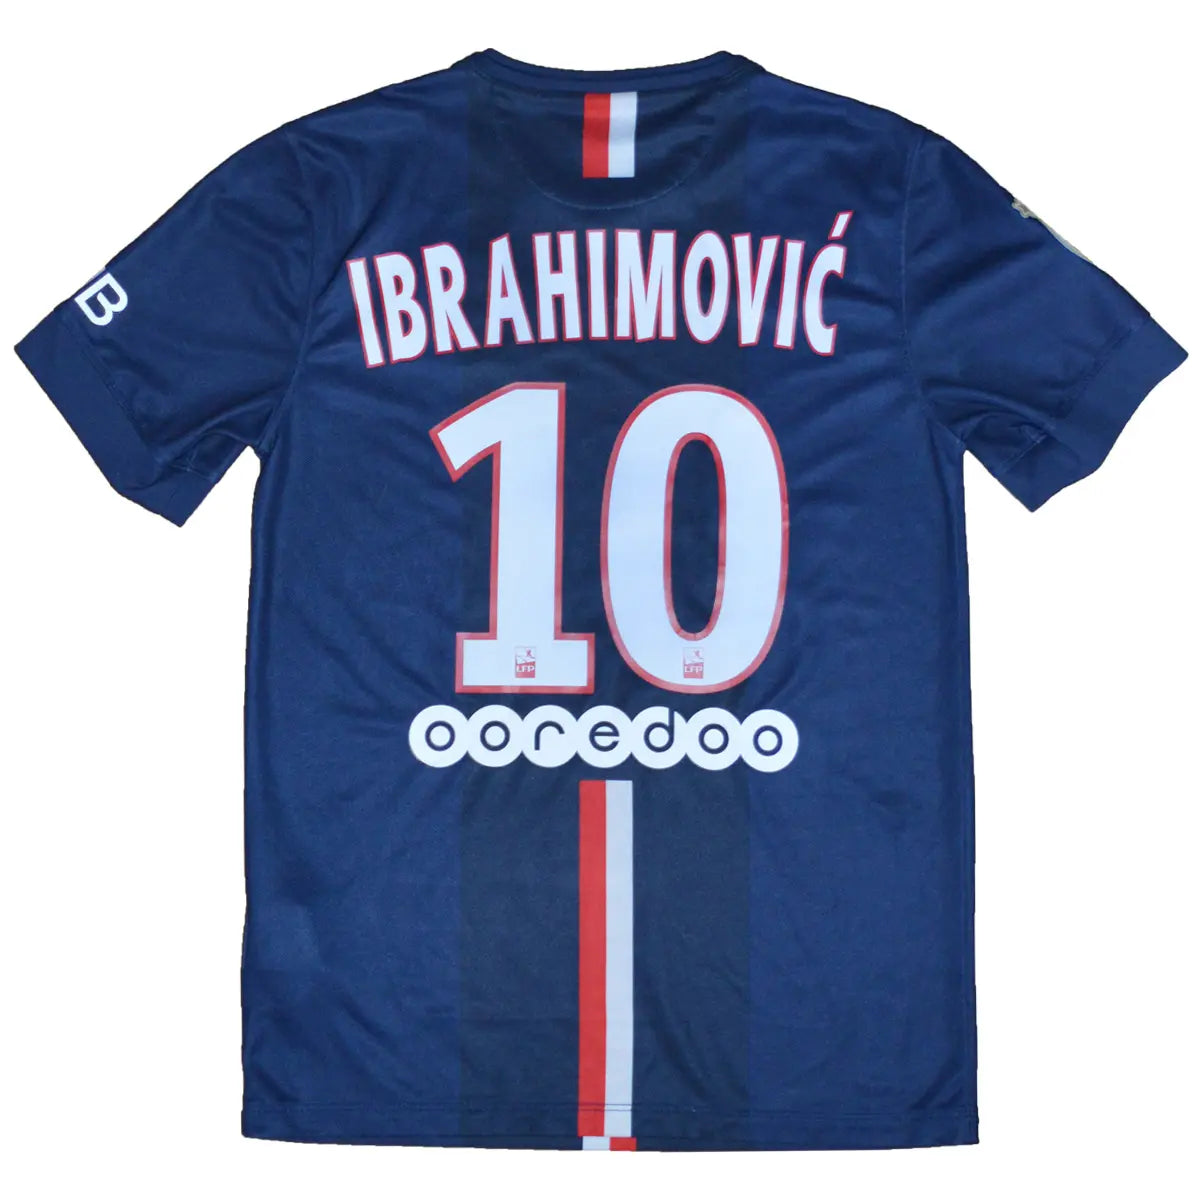 maillot de foot retro/vintage authentique domicile bleu nike, du psg lors de la saison 2014-2015. Le maillot est floqué du numéro 10 Zlatan Ibrahimovic. Le sponsor sur le maillot est celui de fly emirates